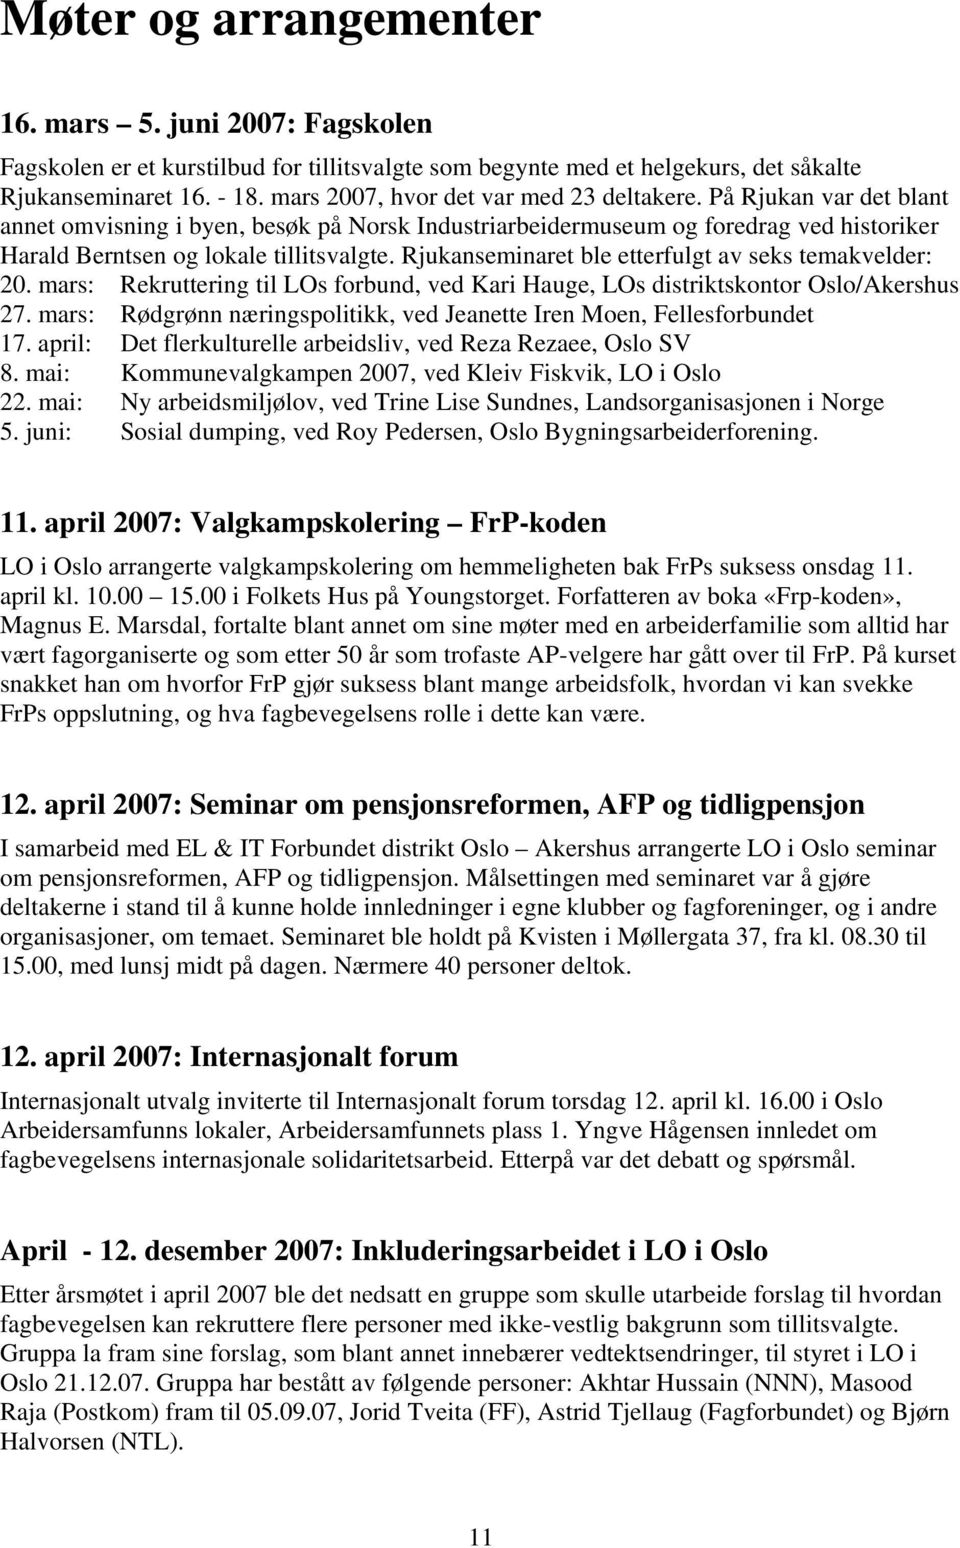 Rjukanseminaret ble etterfulgt av seks temakvelder: 20. mars: Rekruttering til LOs forbund, ved Kari Hauge, LOs distriktskontor Oslo/Akershus 27.